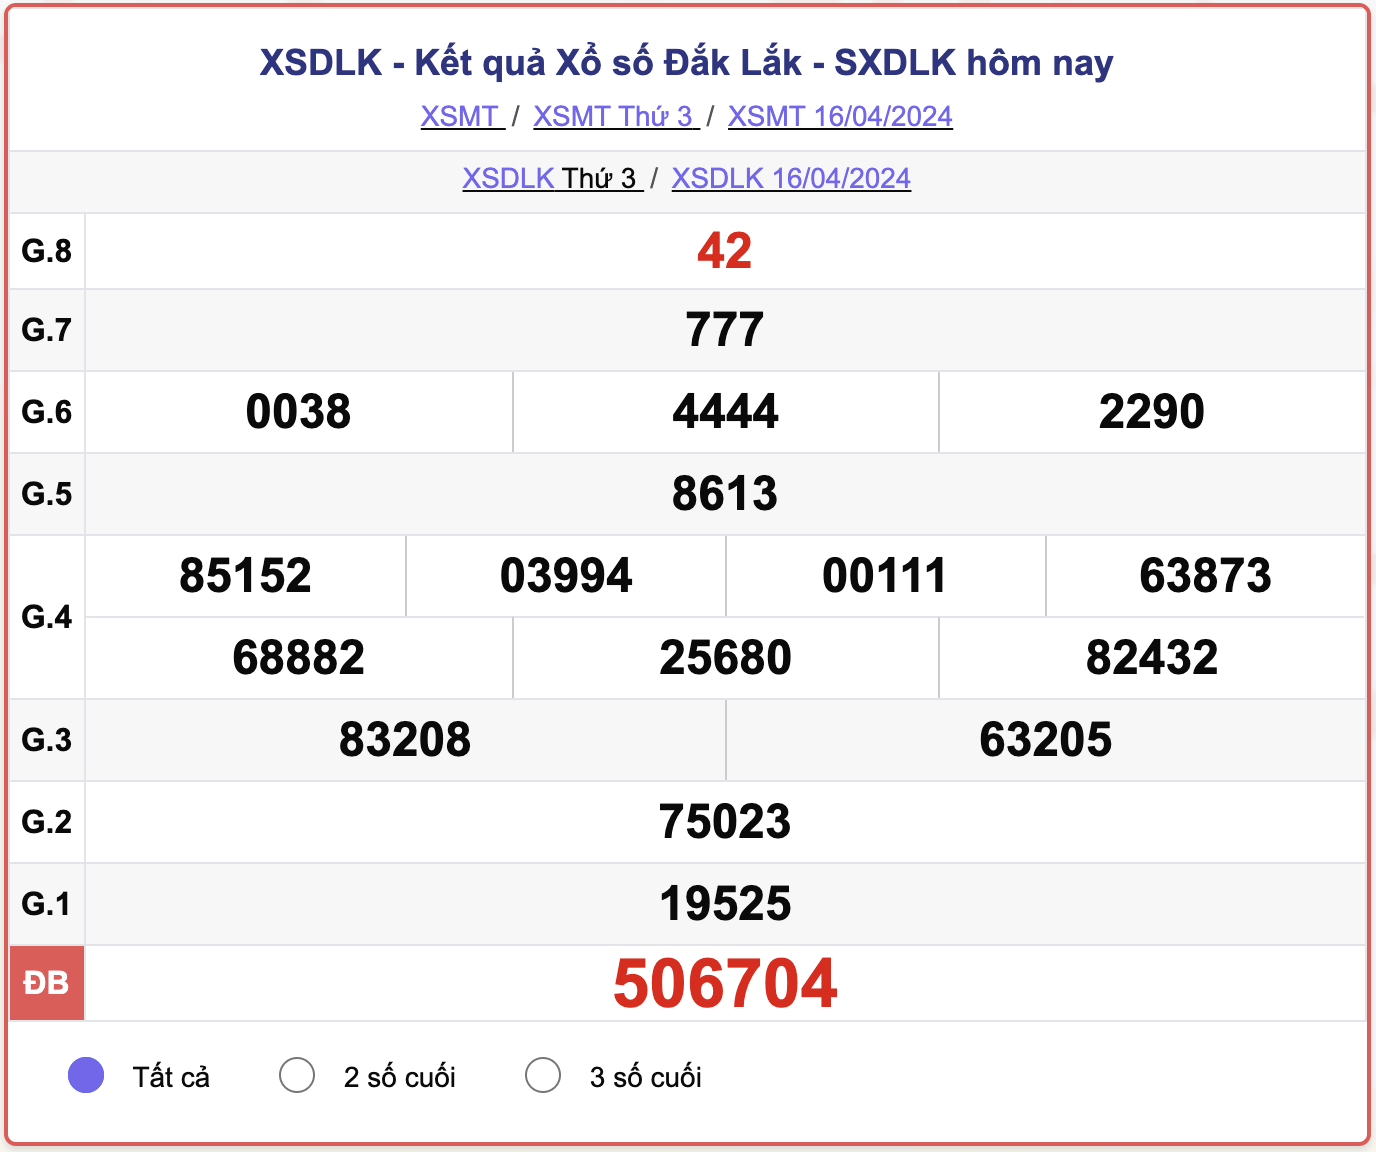 XSDLK thứ 3, kết quả xổ số Đắk Lắk ngày 16/4/2024.